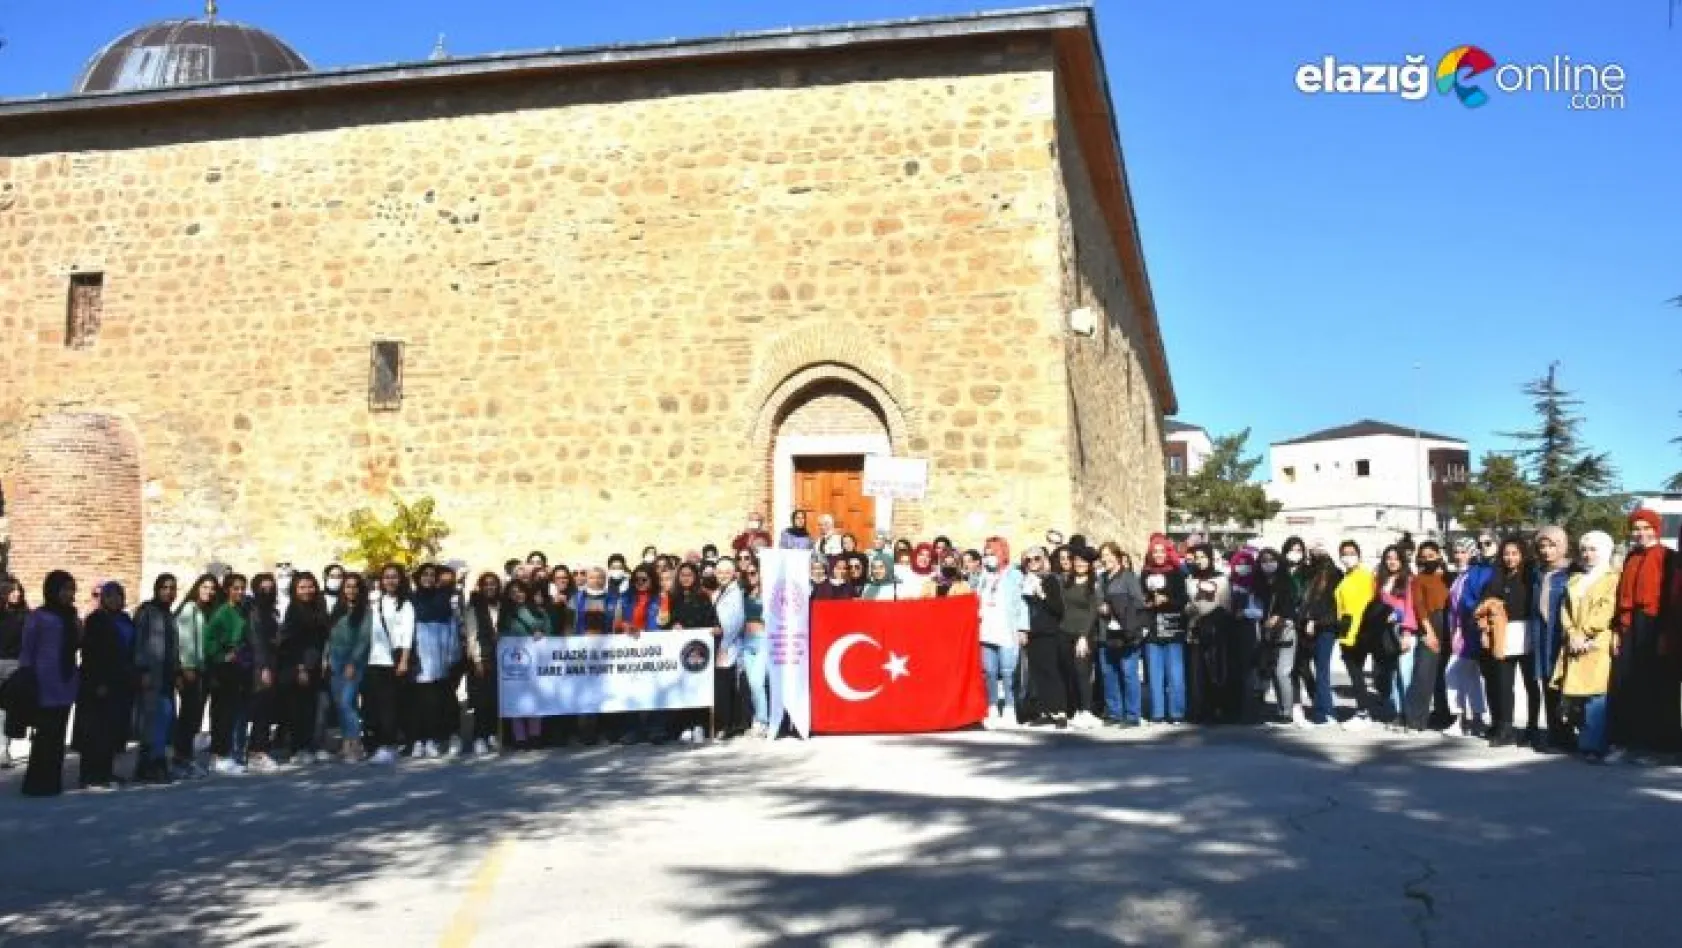 Elazığ'a ilk kez gelen öğrenciler Harput'u gezdi